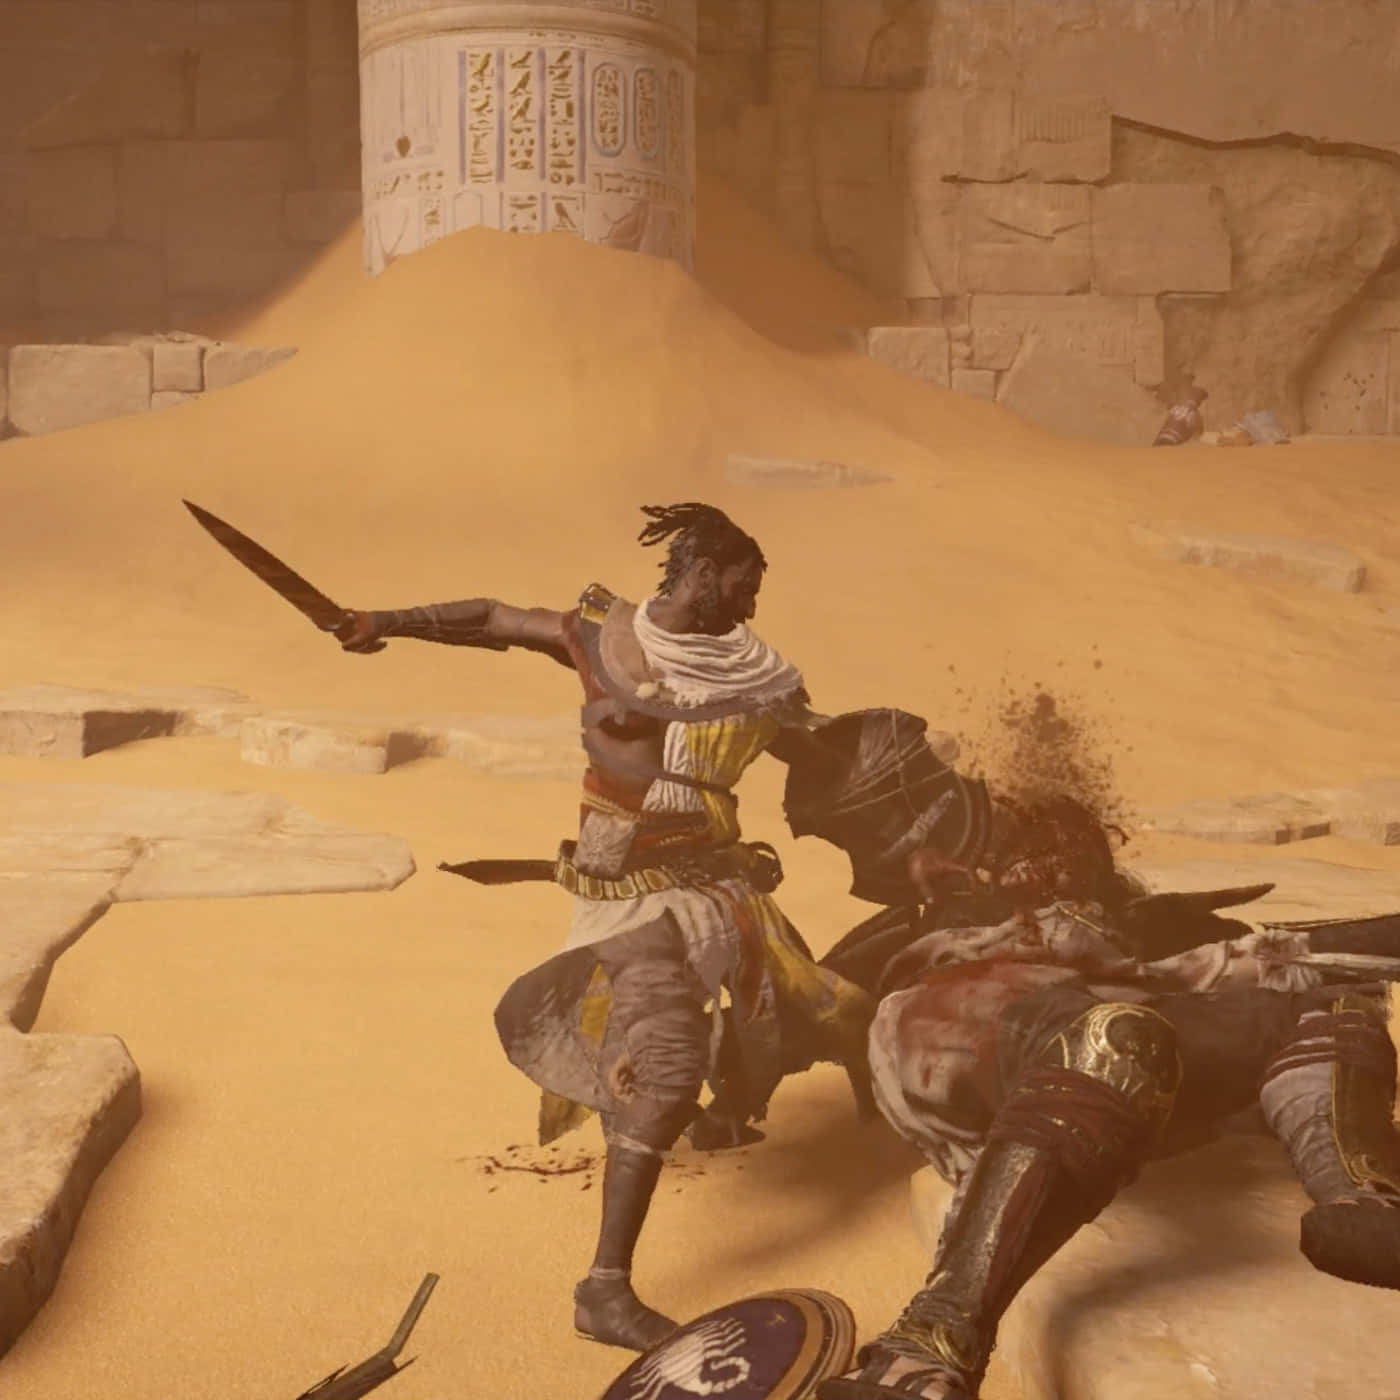 Udforsk Vast Landskab af Ancient Egypt i 'Assassin's Creed Origins'